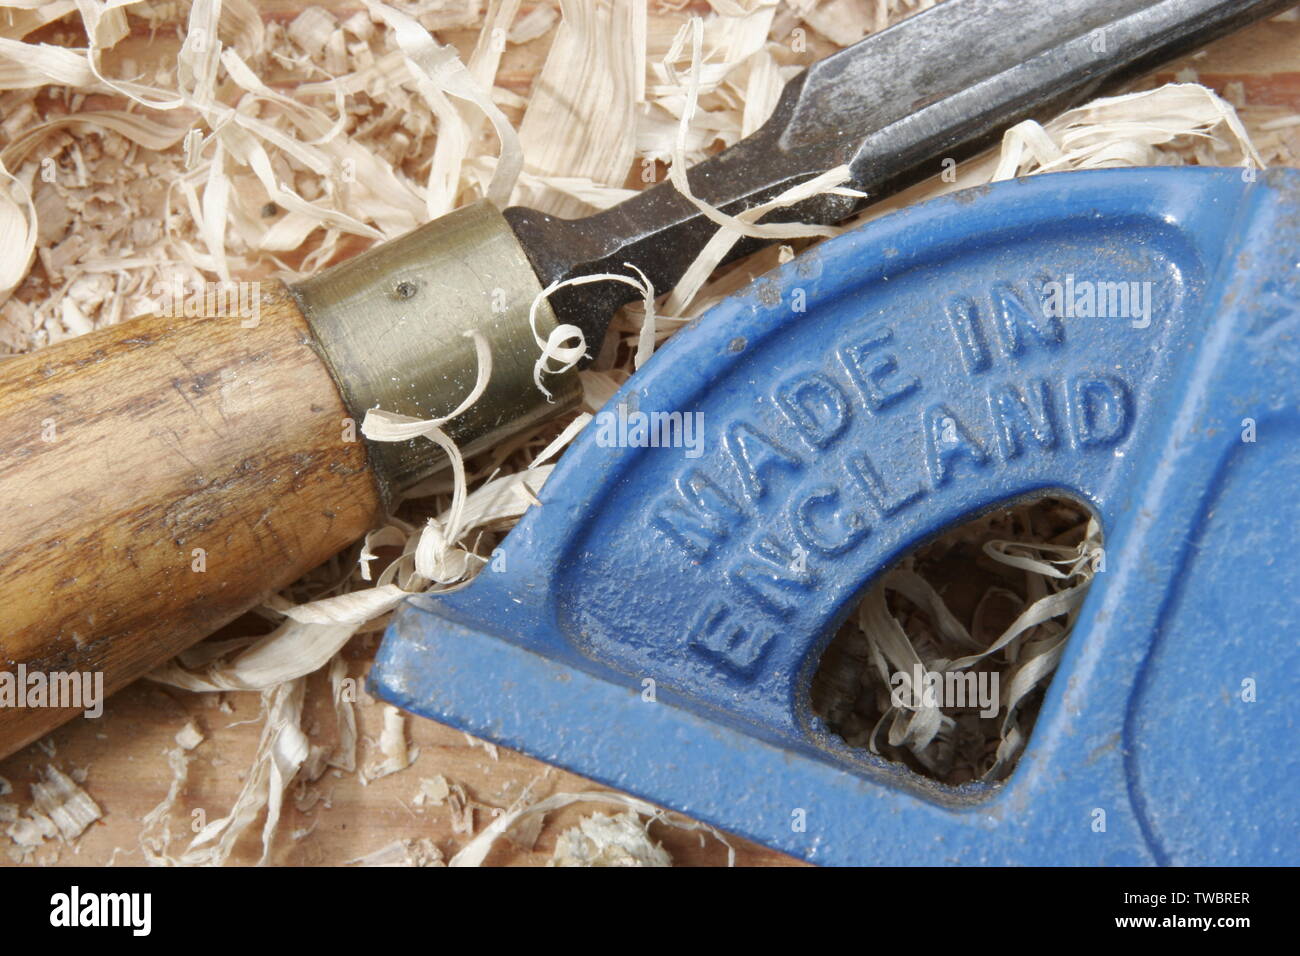 Engländer Werkzeuge für die Holzbearbeitung mit Geprägtem "Made in England" Stockfoto